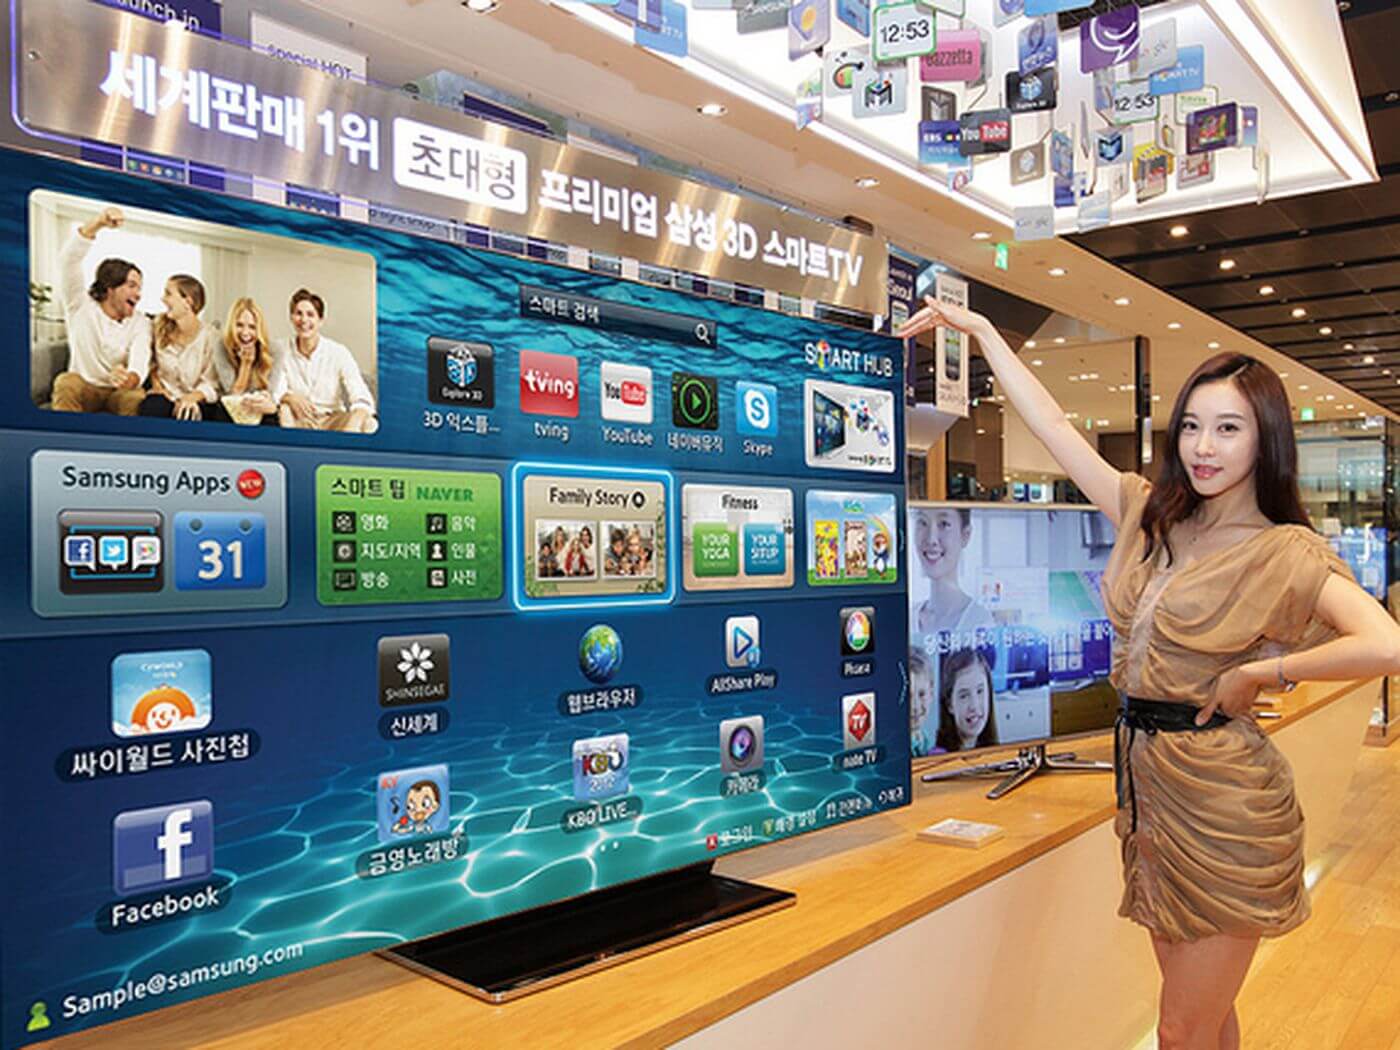 Seorang wanita menunjukkan Samsung Smart TV di sebuah pameran di Korea Selatan